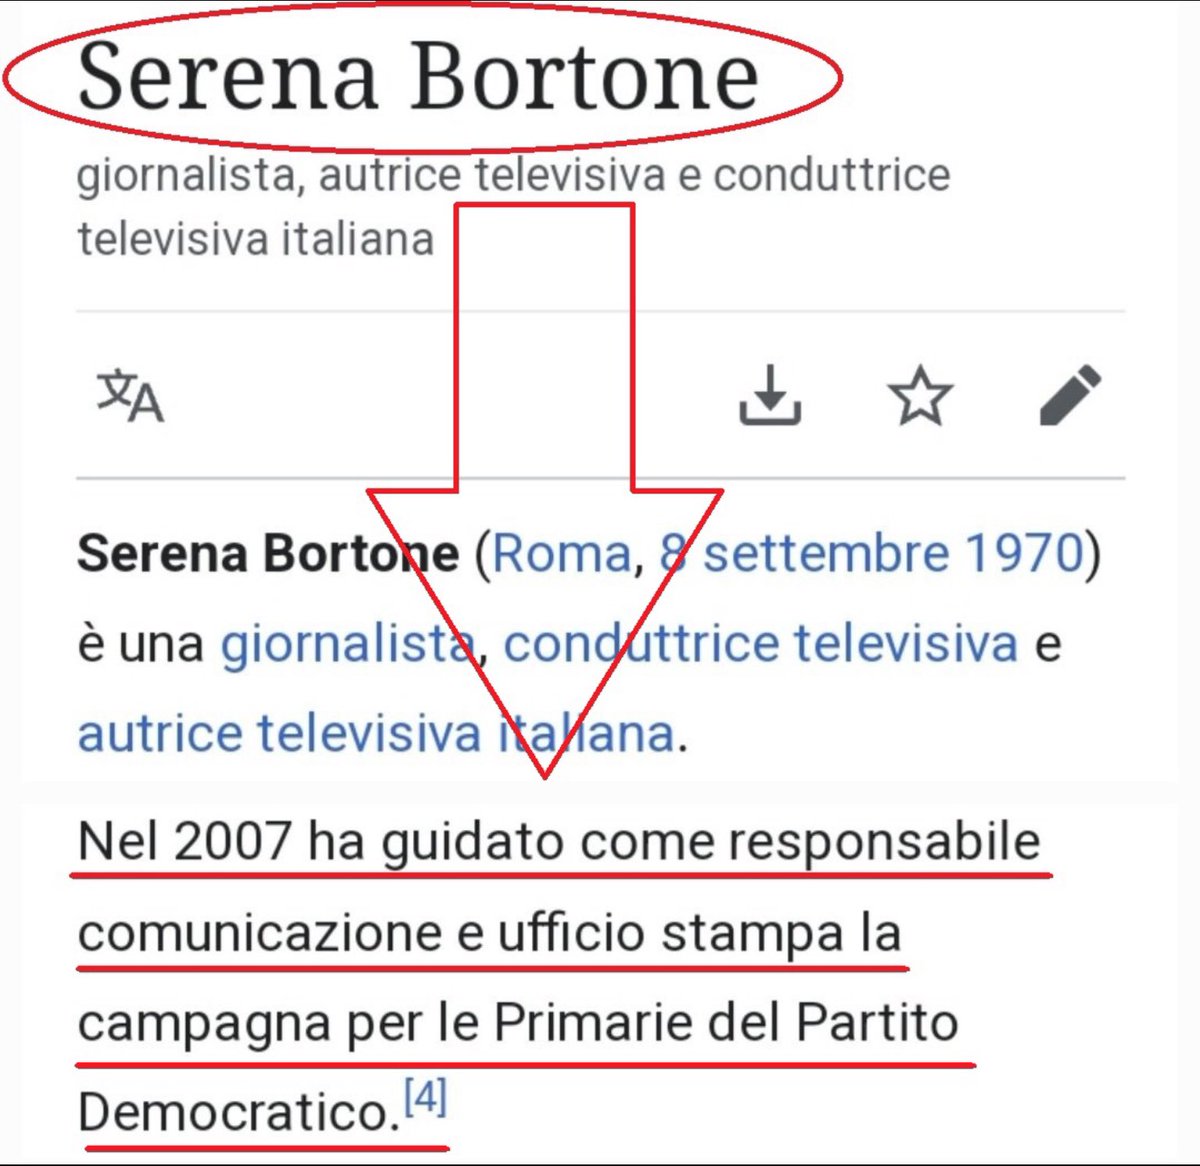 E questa sarebbe la professionista imparziale che ha creato il caso #Scurati #SerenaBortone #Bortone , da un mese fa un programma il cui unico argomento è il fascismo e i suoi ospiti offendono governo e il PDC Meloni ora sappiamo perché #Pd #Elezioni #Roccella